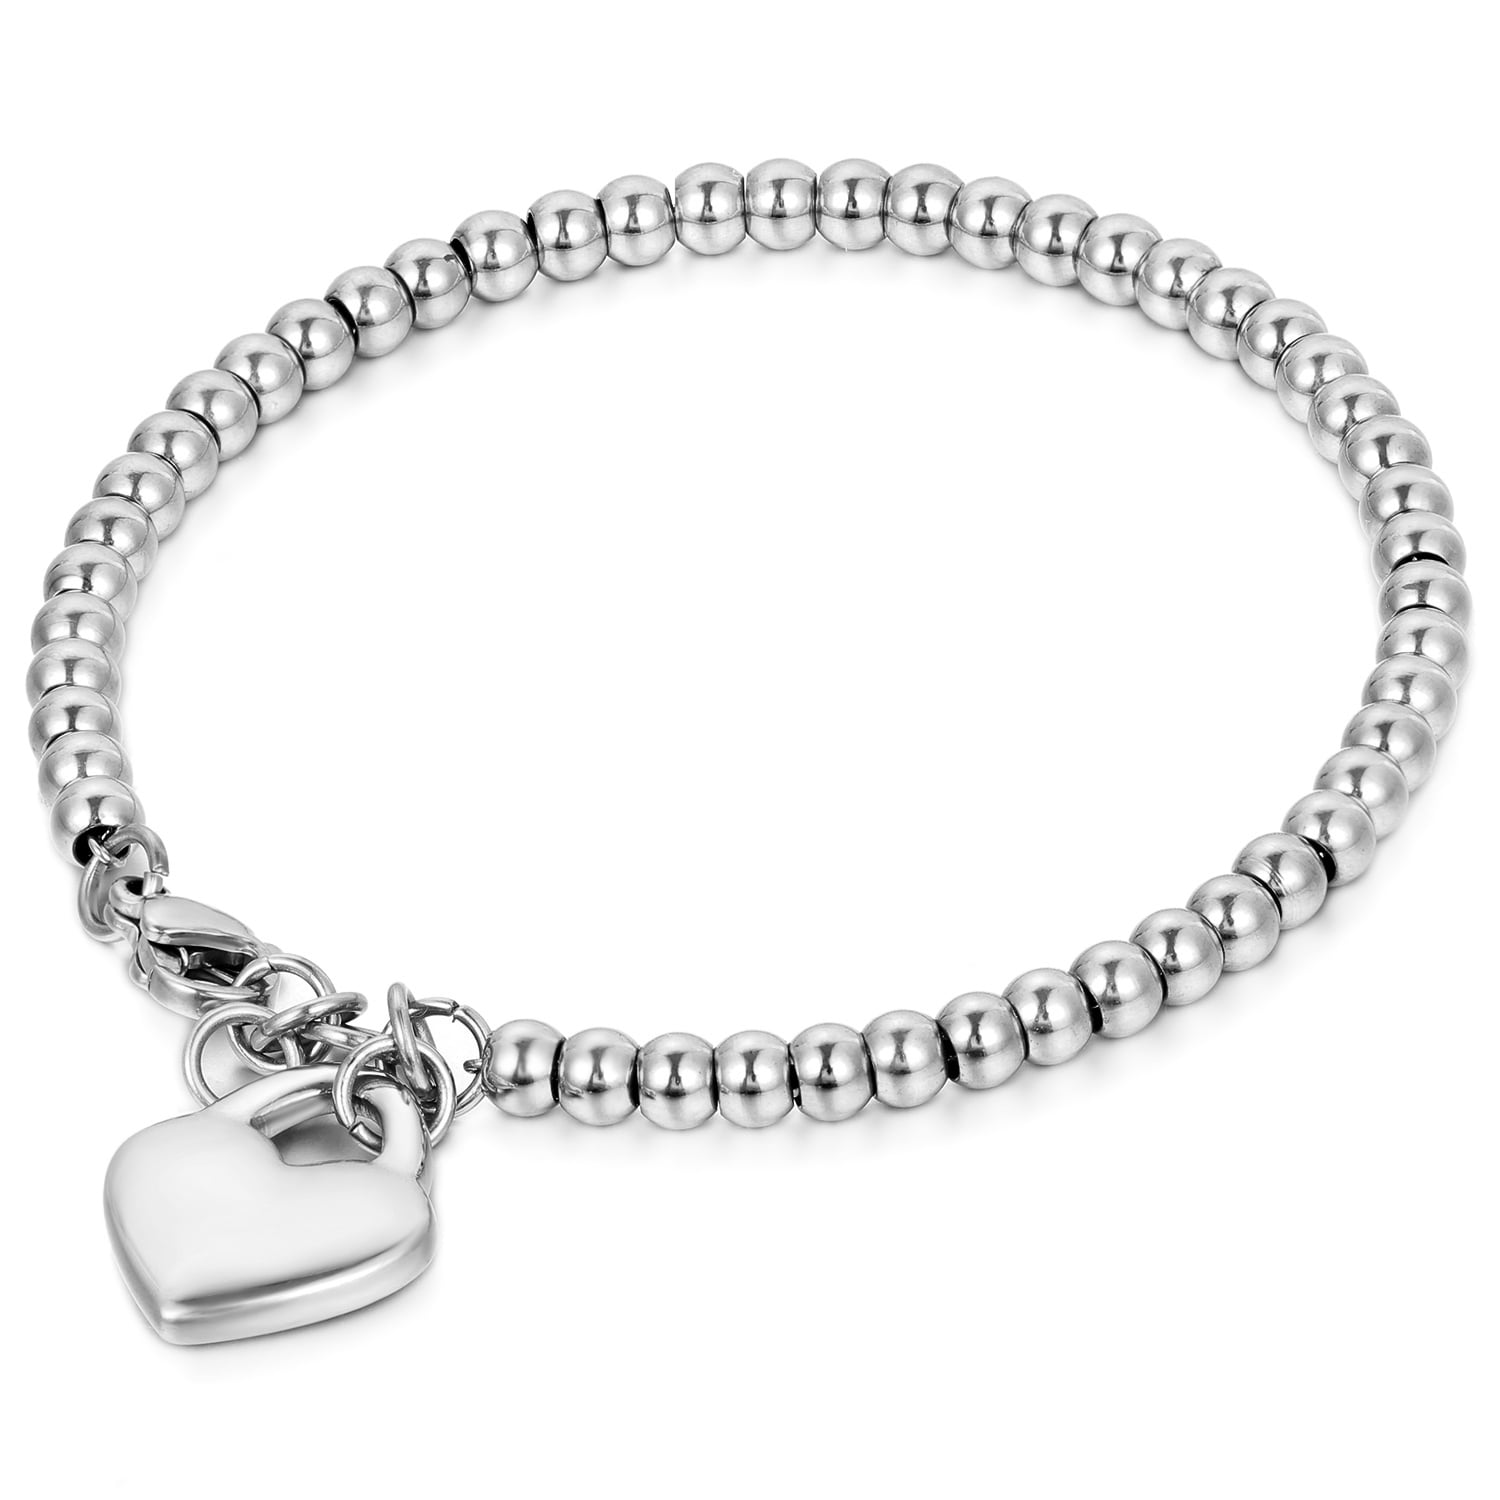 Stainless Steel Heart Charm Beaded Bracelet for Women Girls Christmas ...